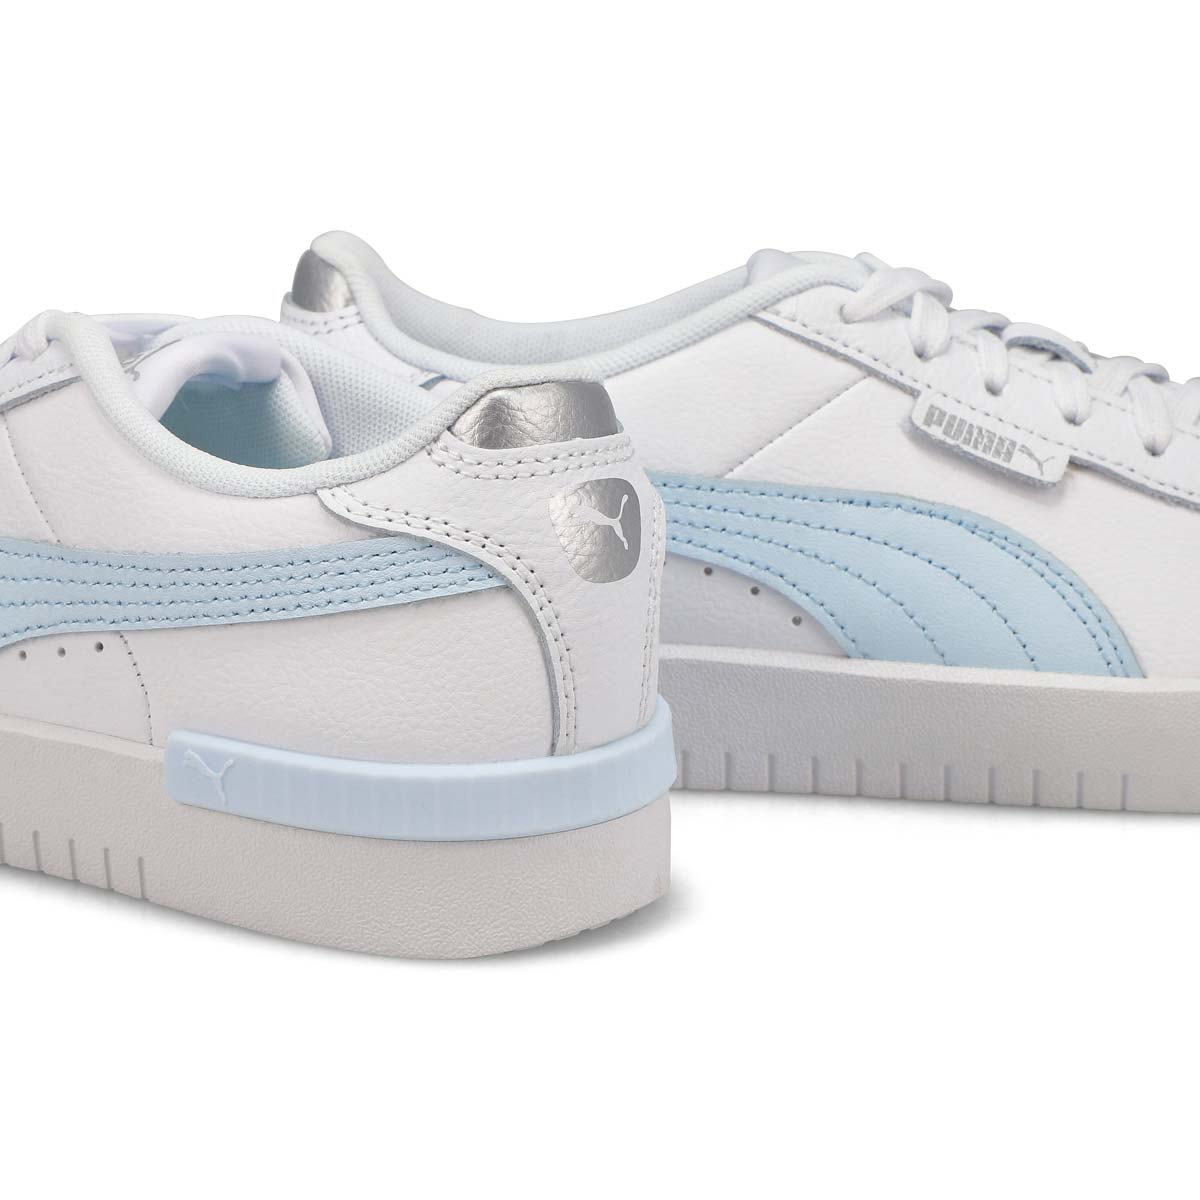 Women's Jada Renew Lace Up Sneaker - White/Blue